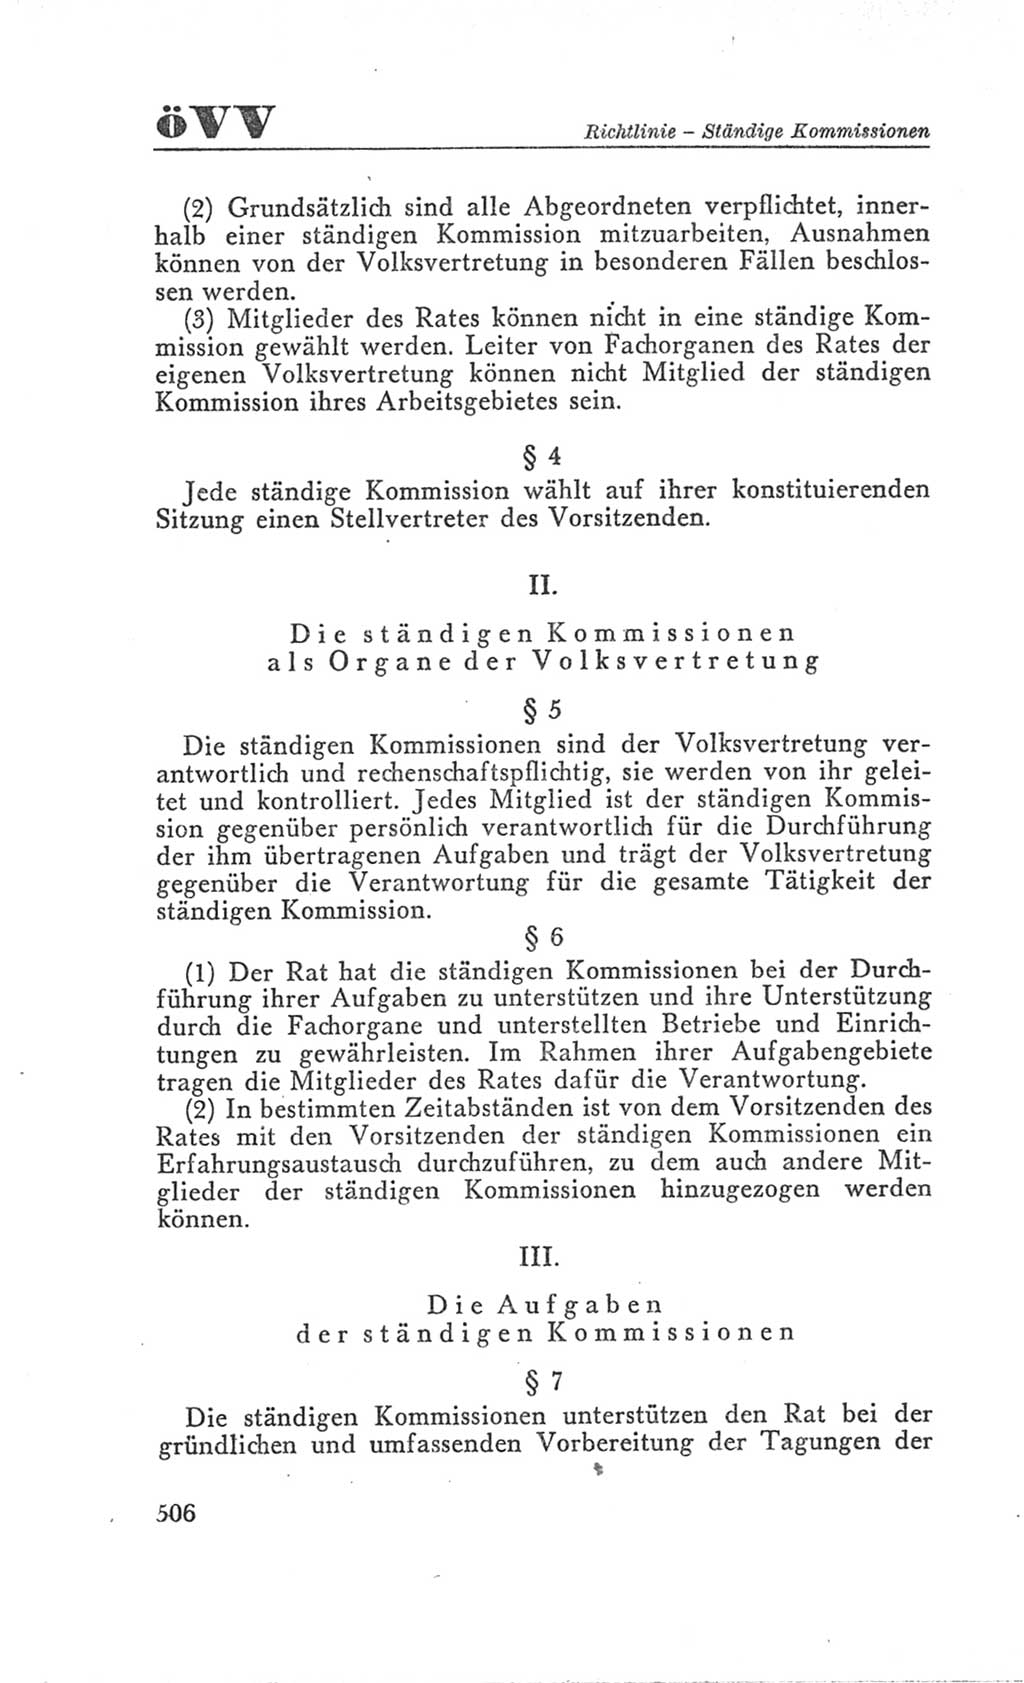 Handbuch der Volkskammer (VK) der Deutschen Demokratischen Republik (DDR), 3. Wahlperiode 1958-1963, Seite 506 (Hdb. VK. DDR 3. WP. 1958-1963, S. 506)